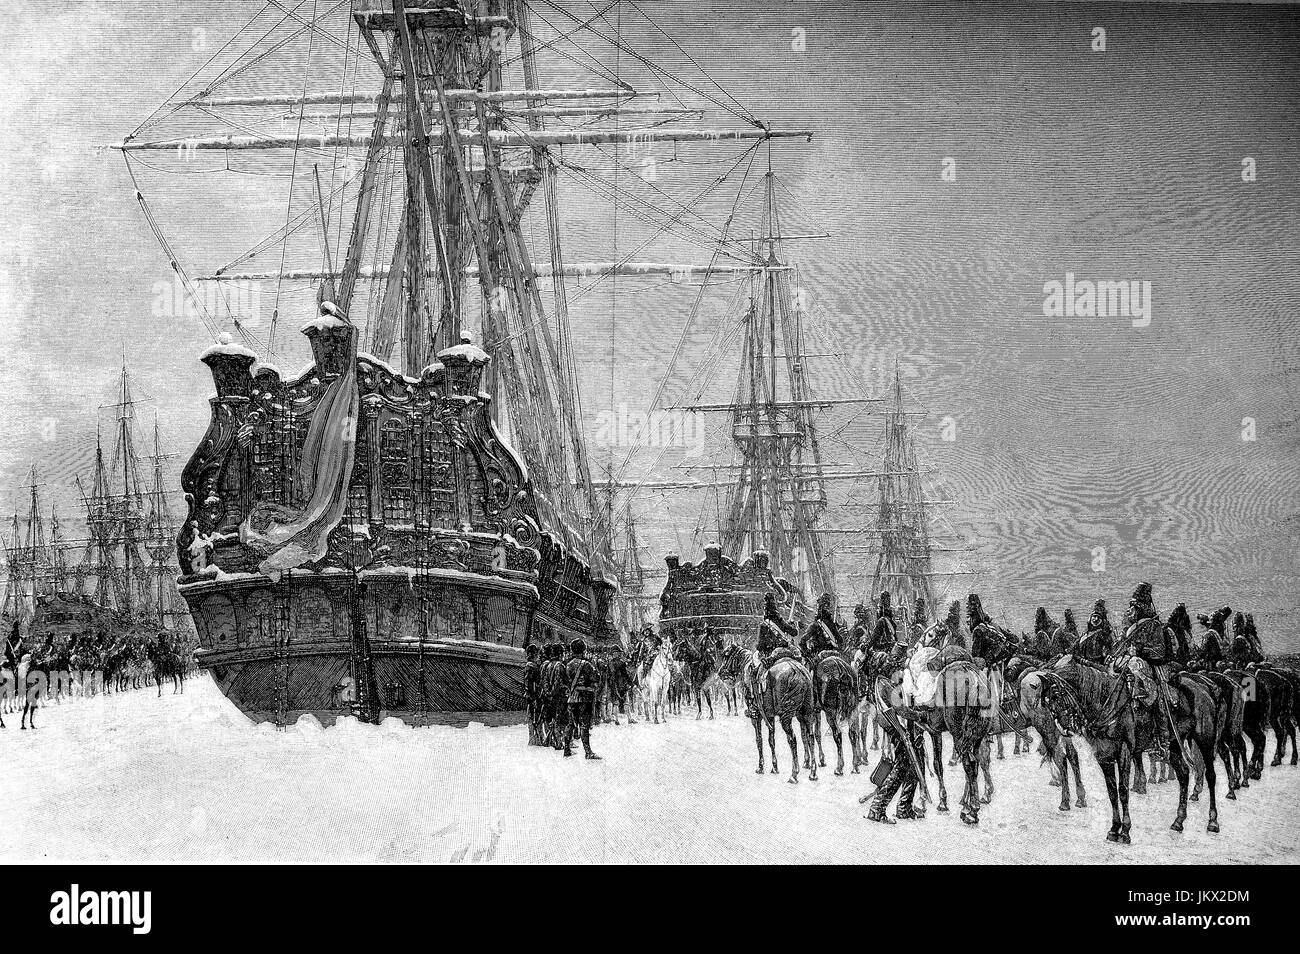 Digital verbessert:, Husaren der französischen Republik beschlagnahmt die niederländische Flotte, die durch das Eis in 1795, Holland, Publikation aus dem Jahr 1882 eingeschlossen war Stockfoto